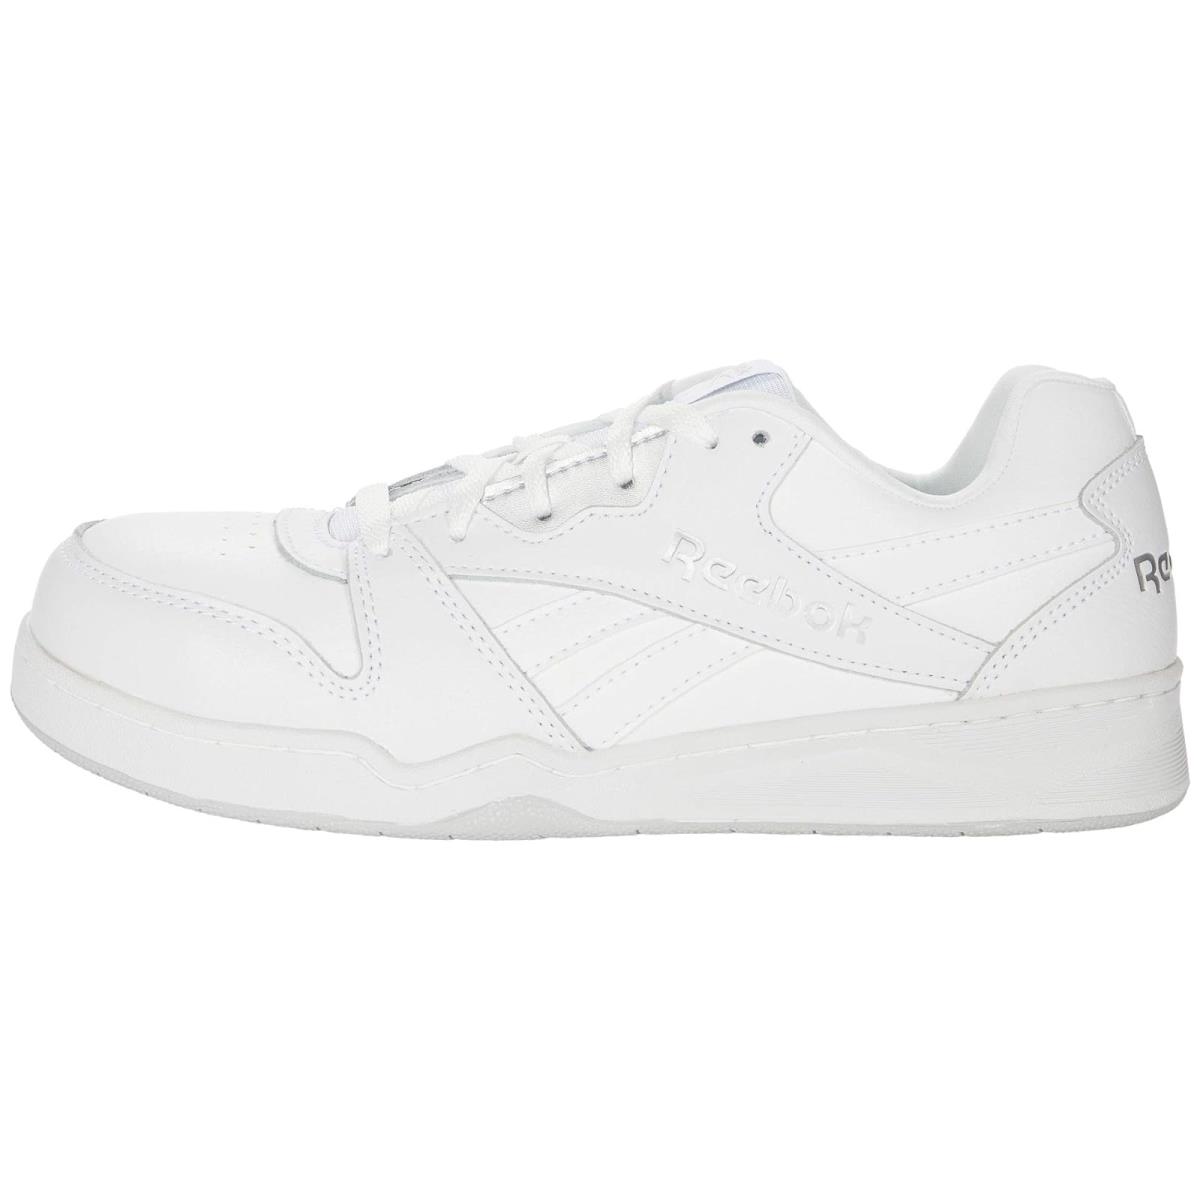 Reebok shoes  - White/Grey 2